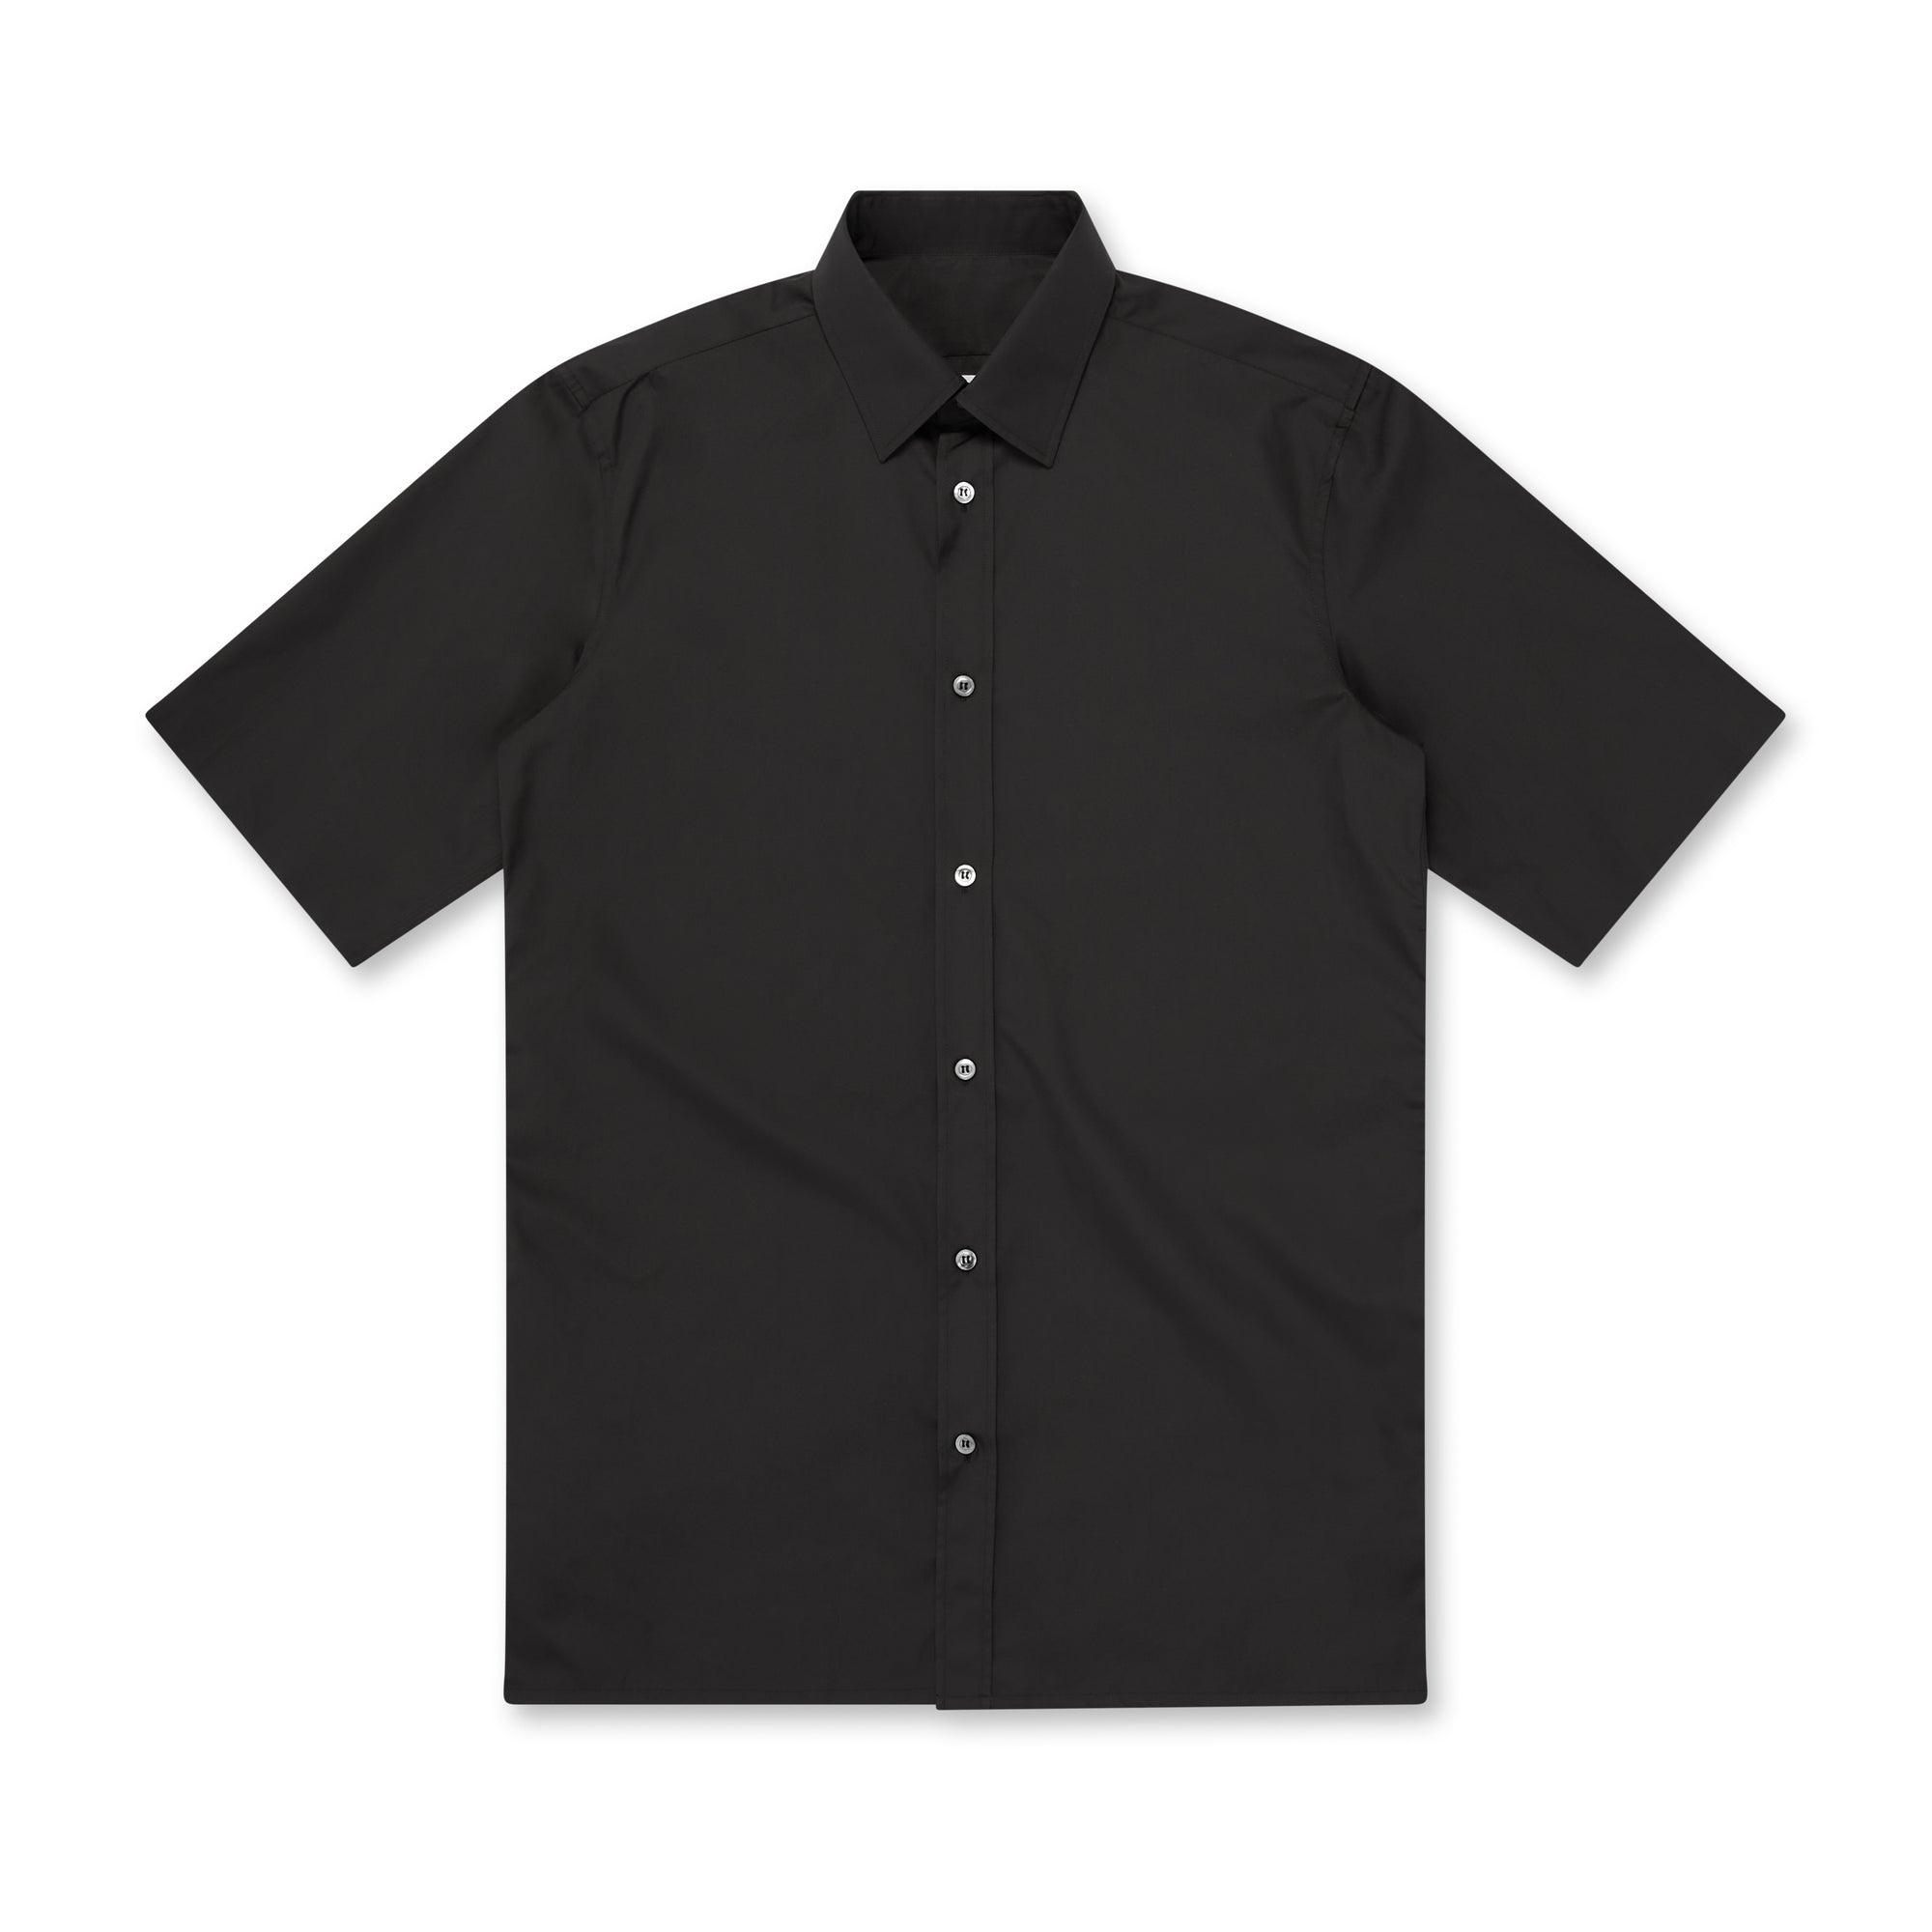 Maison Margiela - Men’s Short-Sleeved Shirt - (Black) view 5